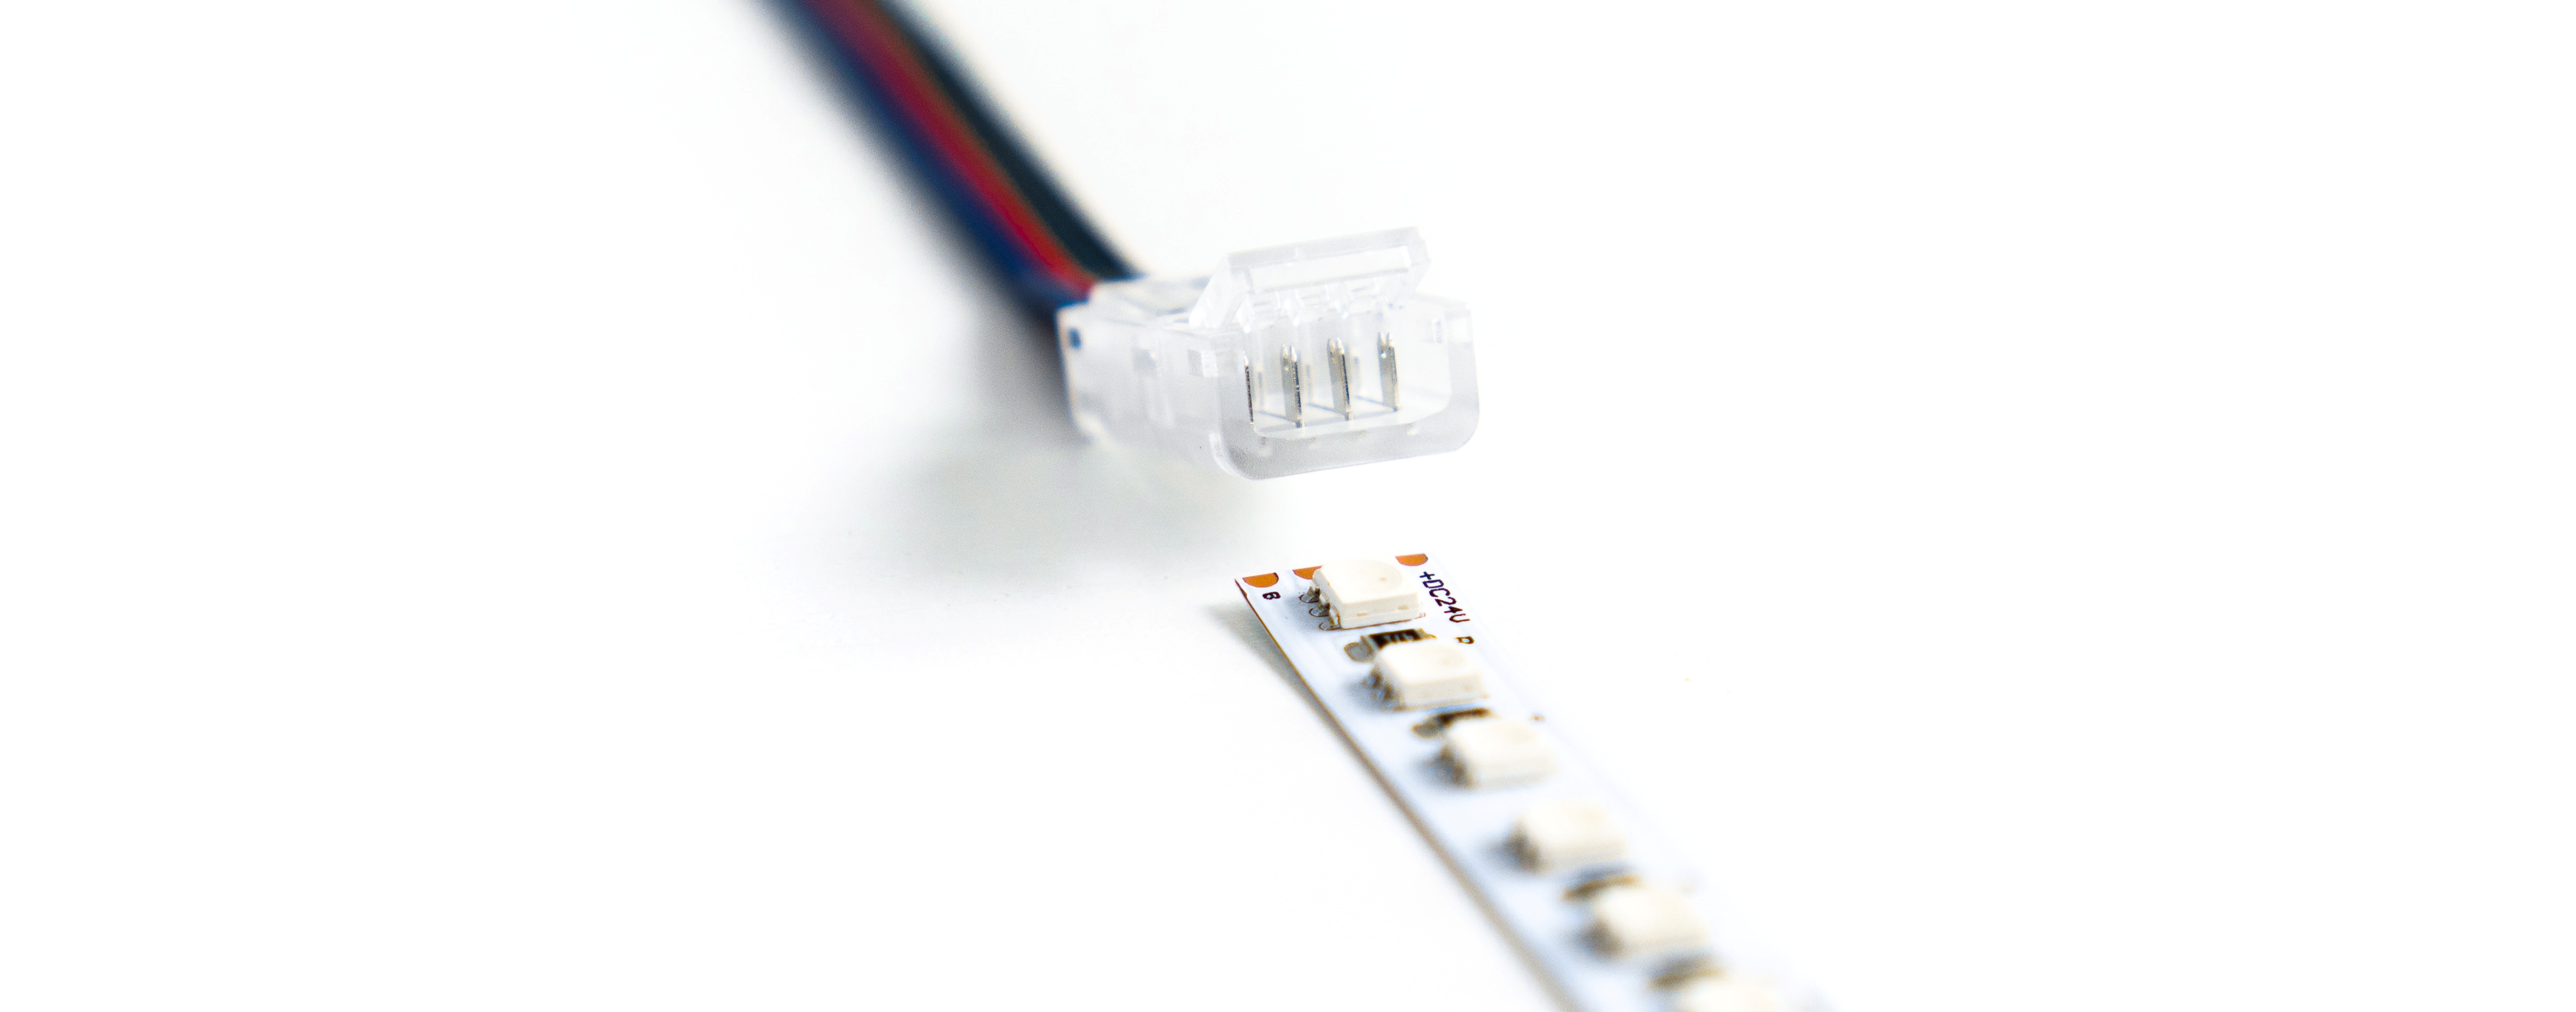 Piny przebijające PCB w taśmie LED RGB lub CCT